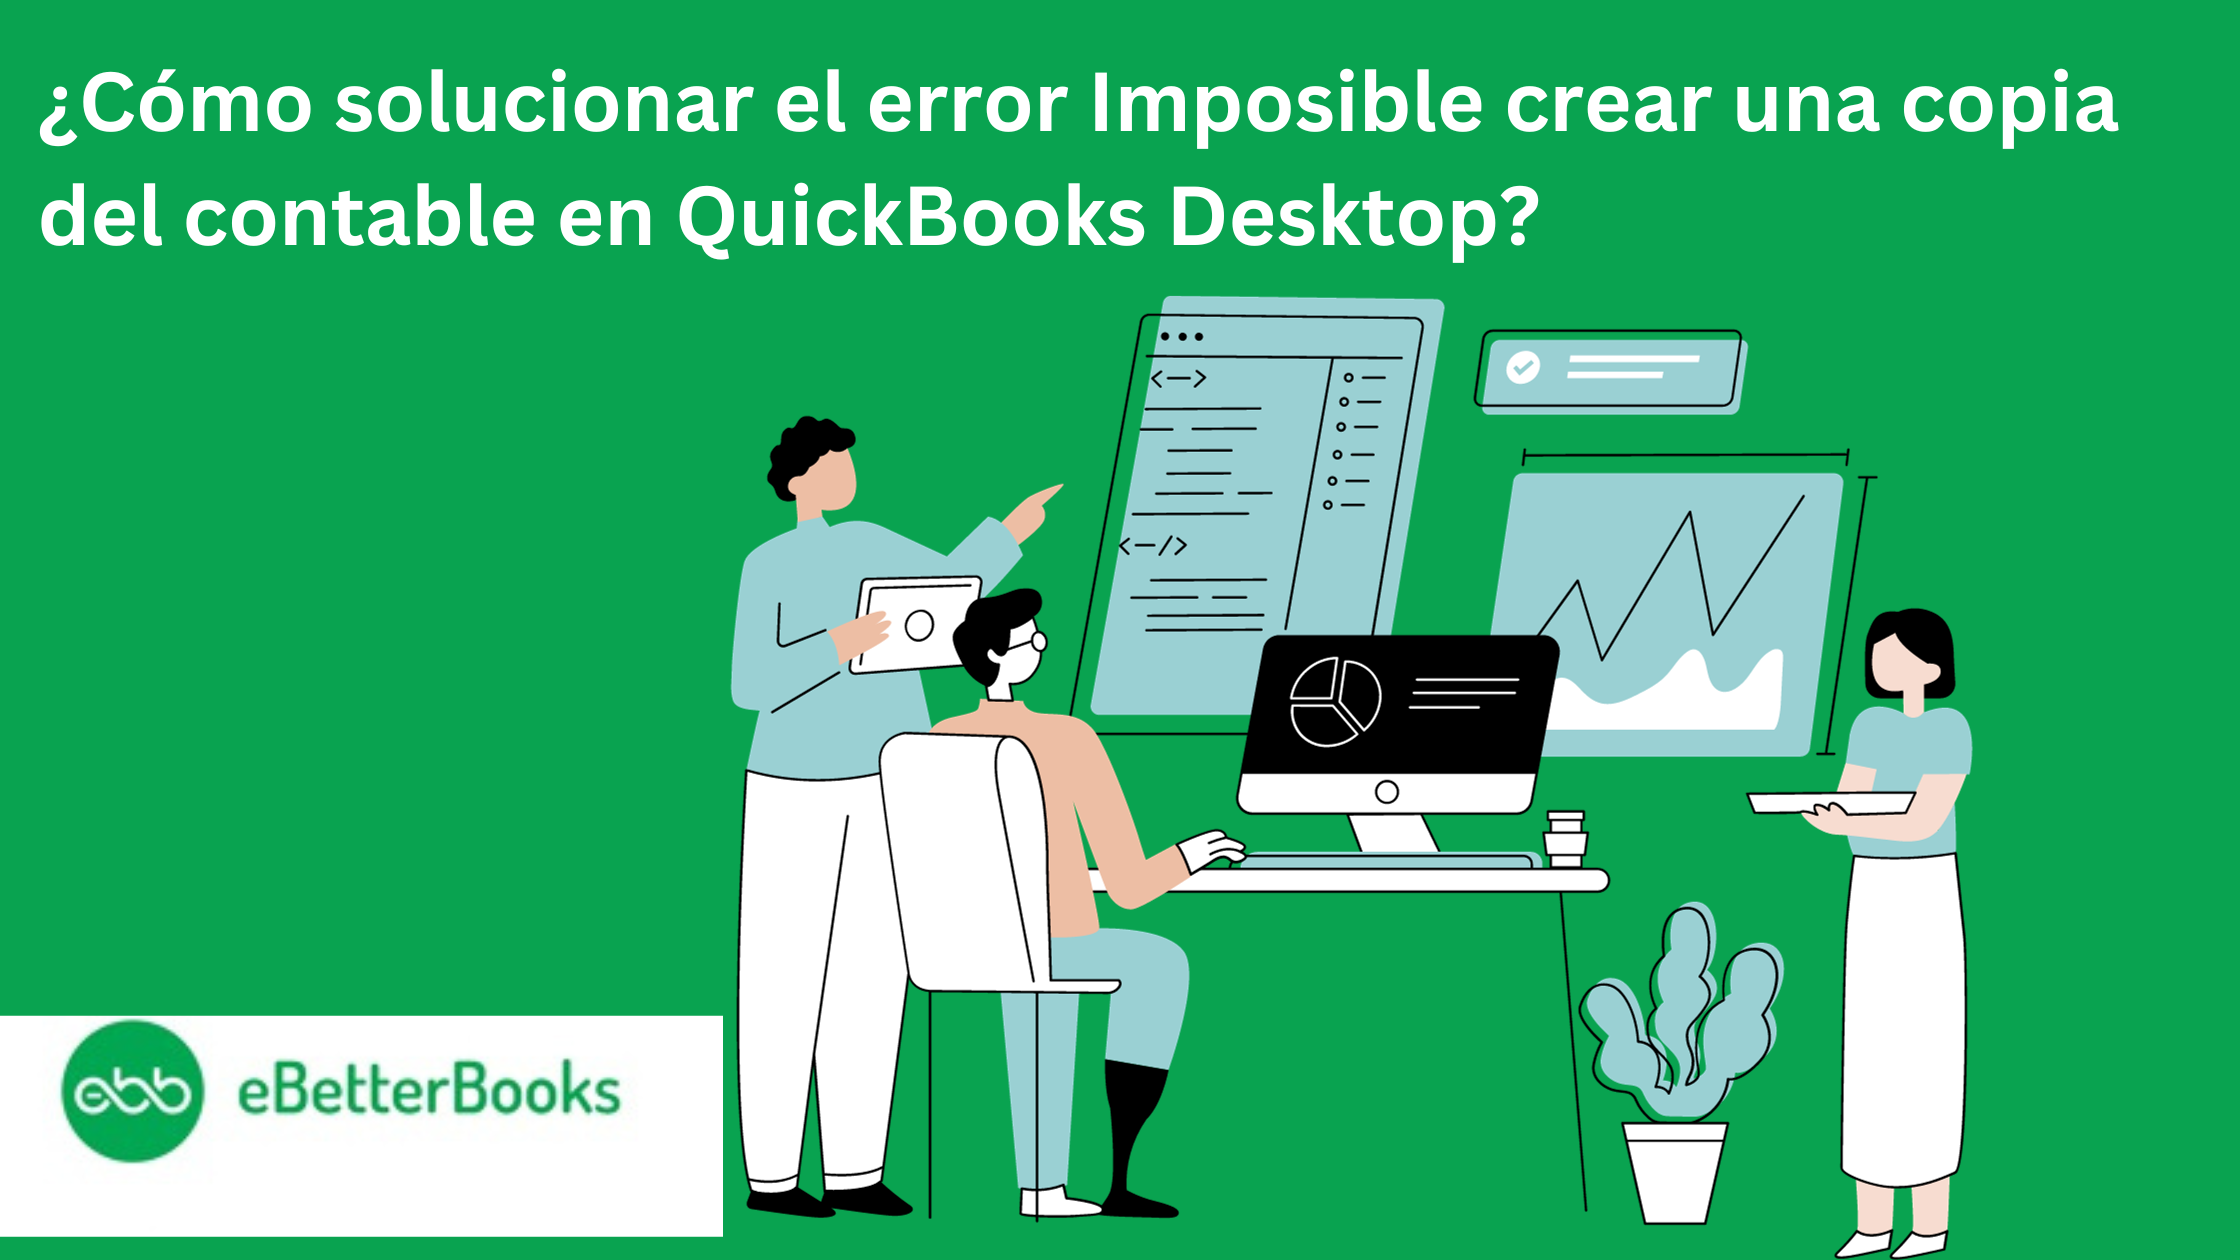 Imposible crear una copia del contable en QuickBooks Desktop